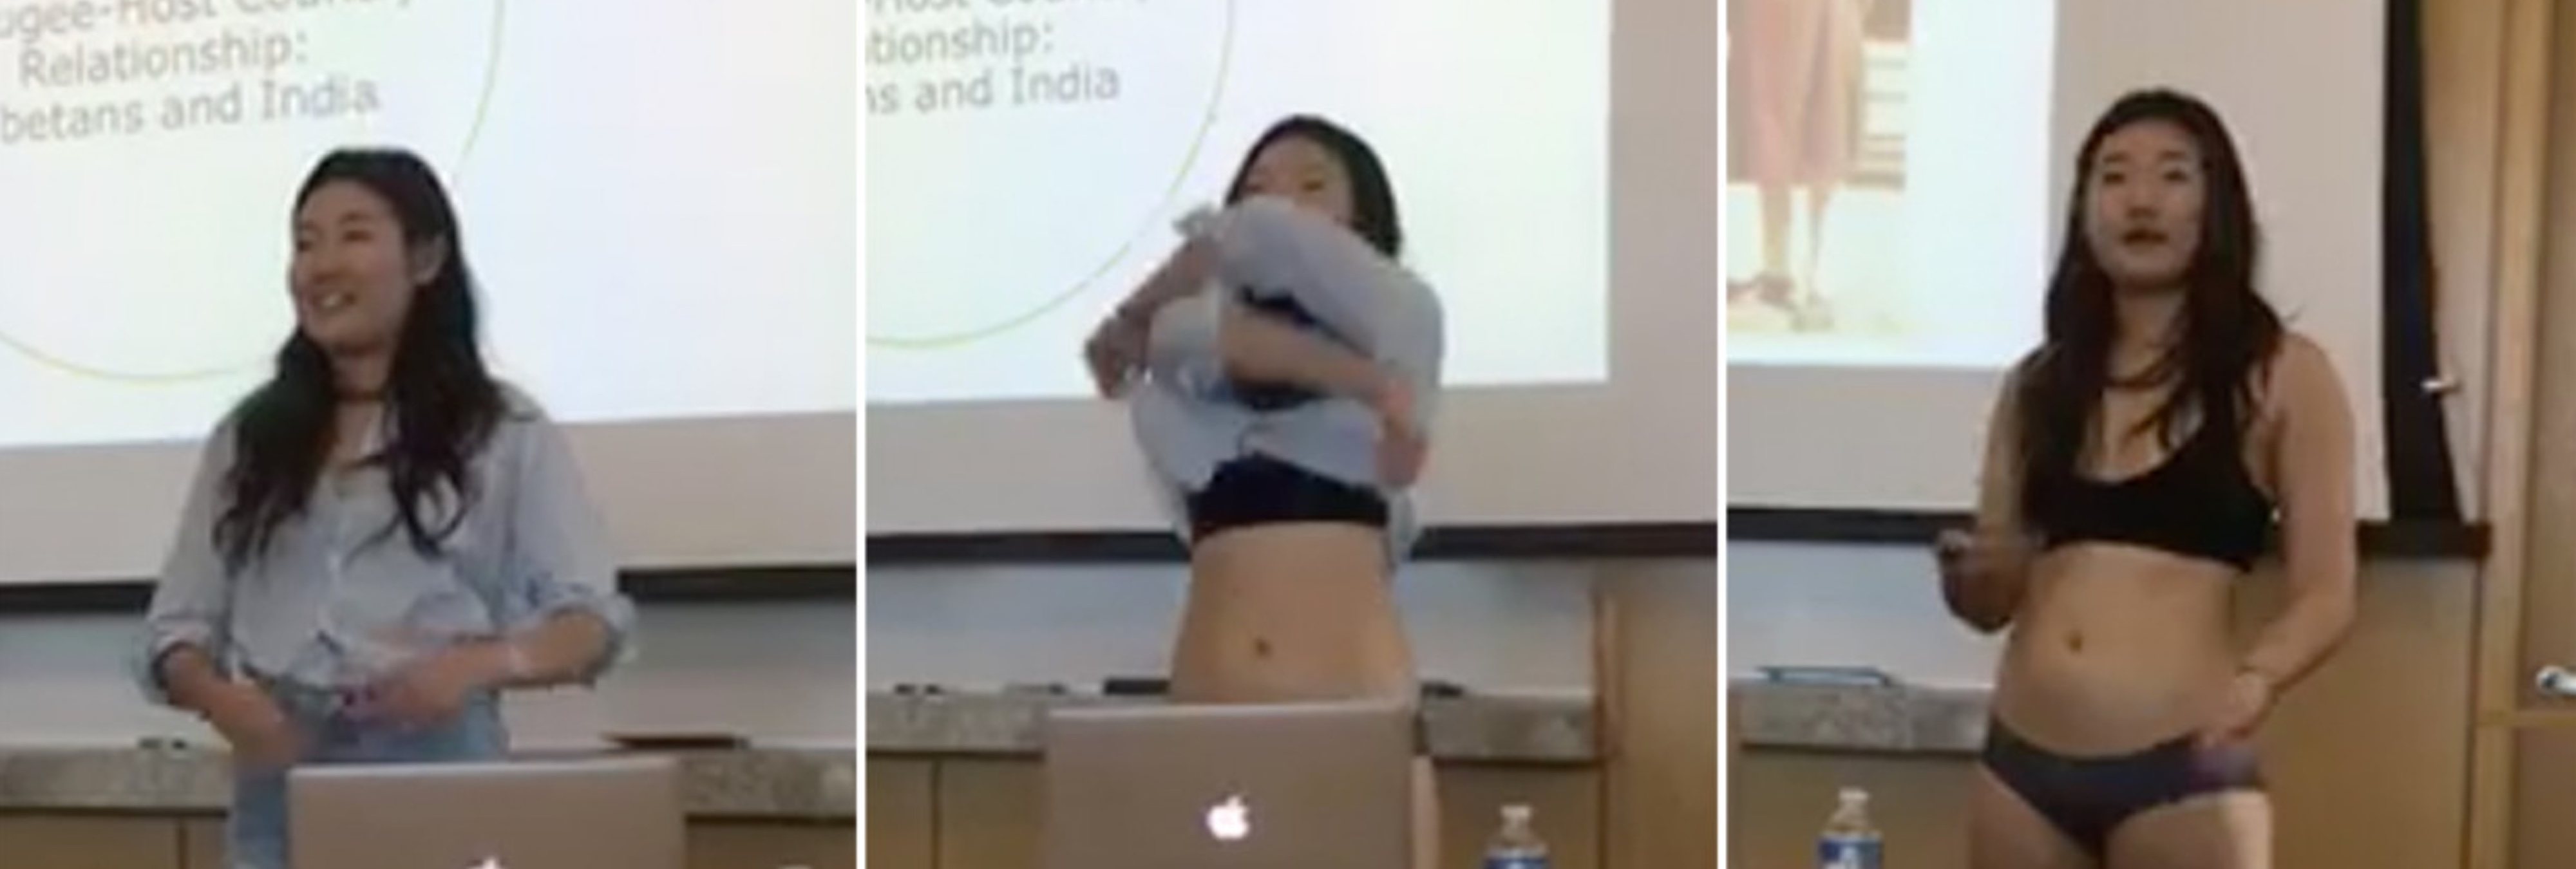 Una estudiante se desnuda en su defensa de la tesis en protesta al machismo de una profesora